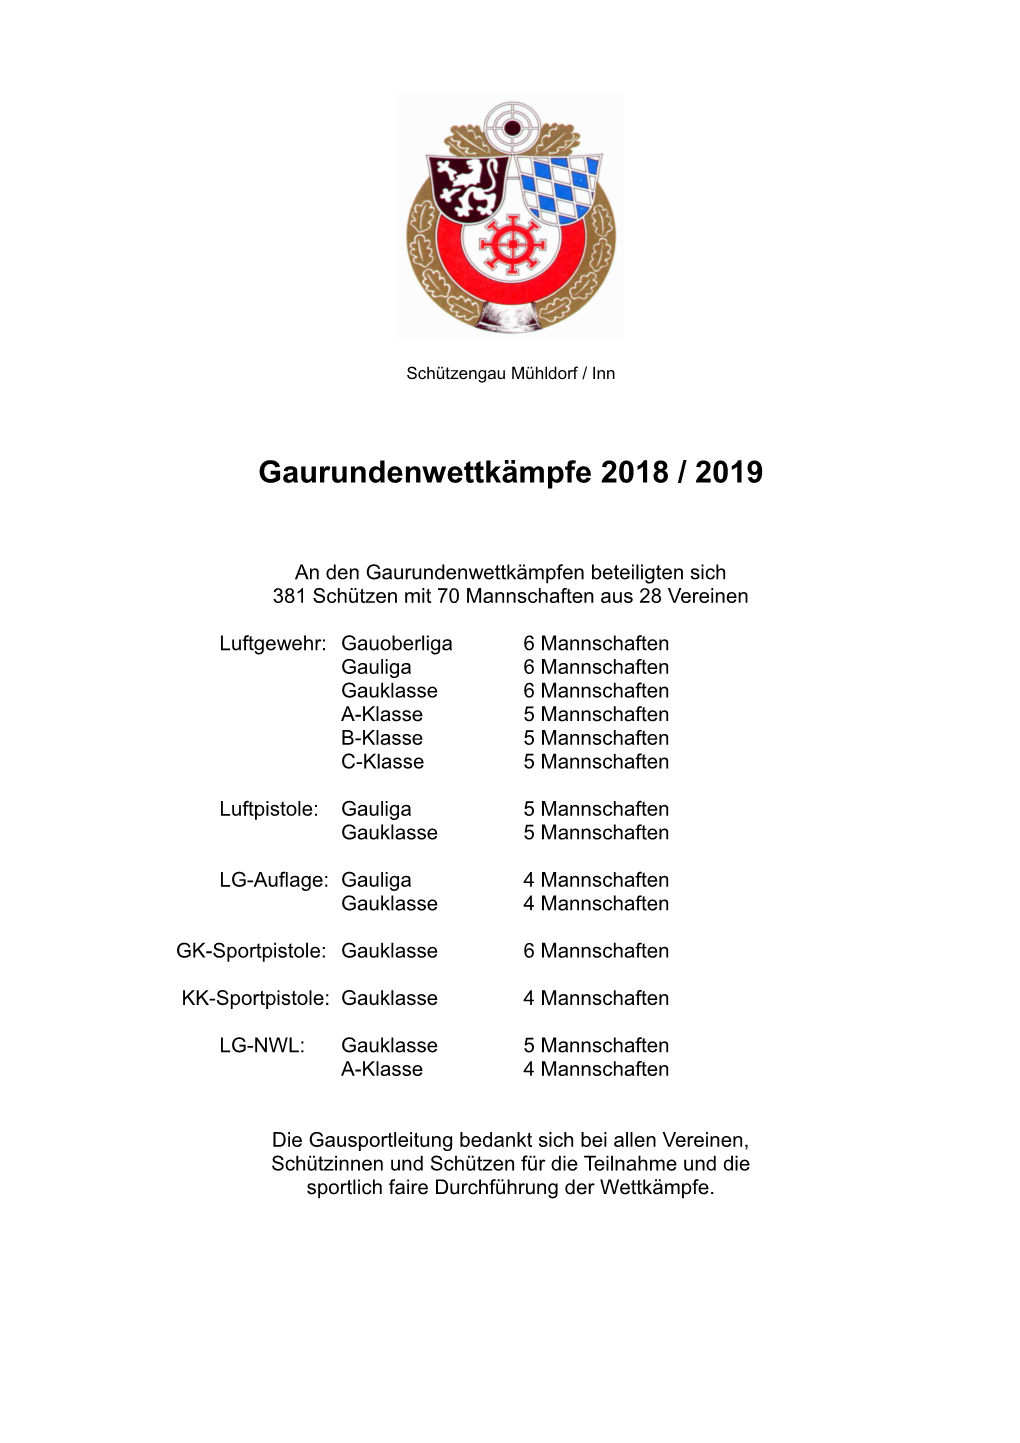 Gaurundenwettkämpfe 2018 / 2019